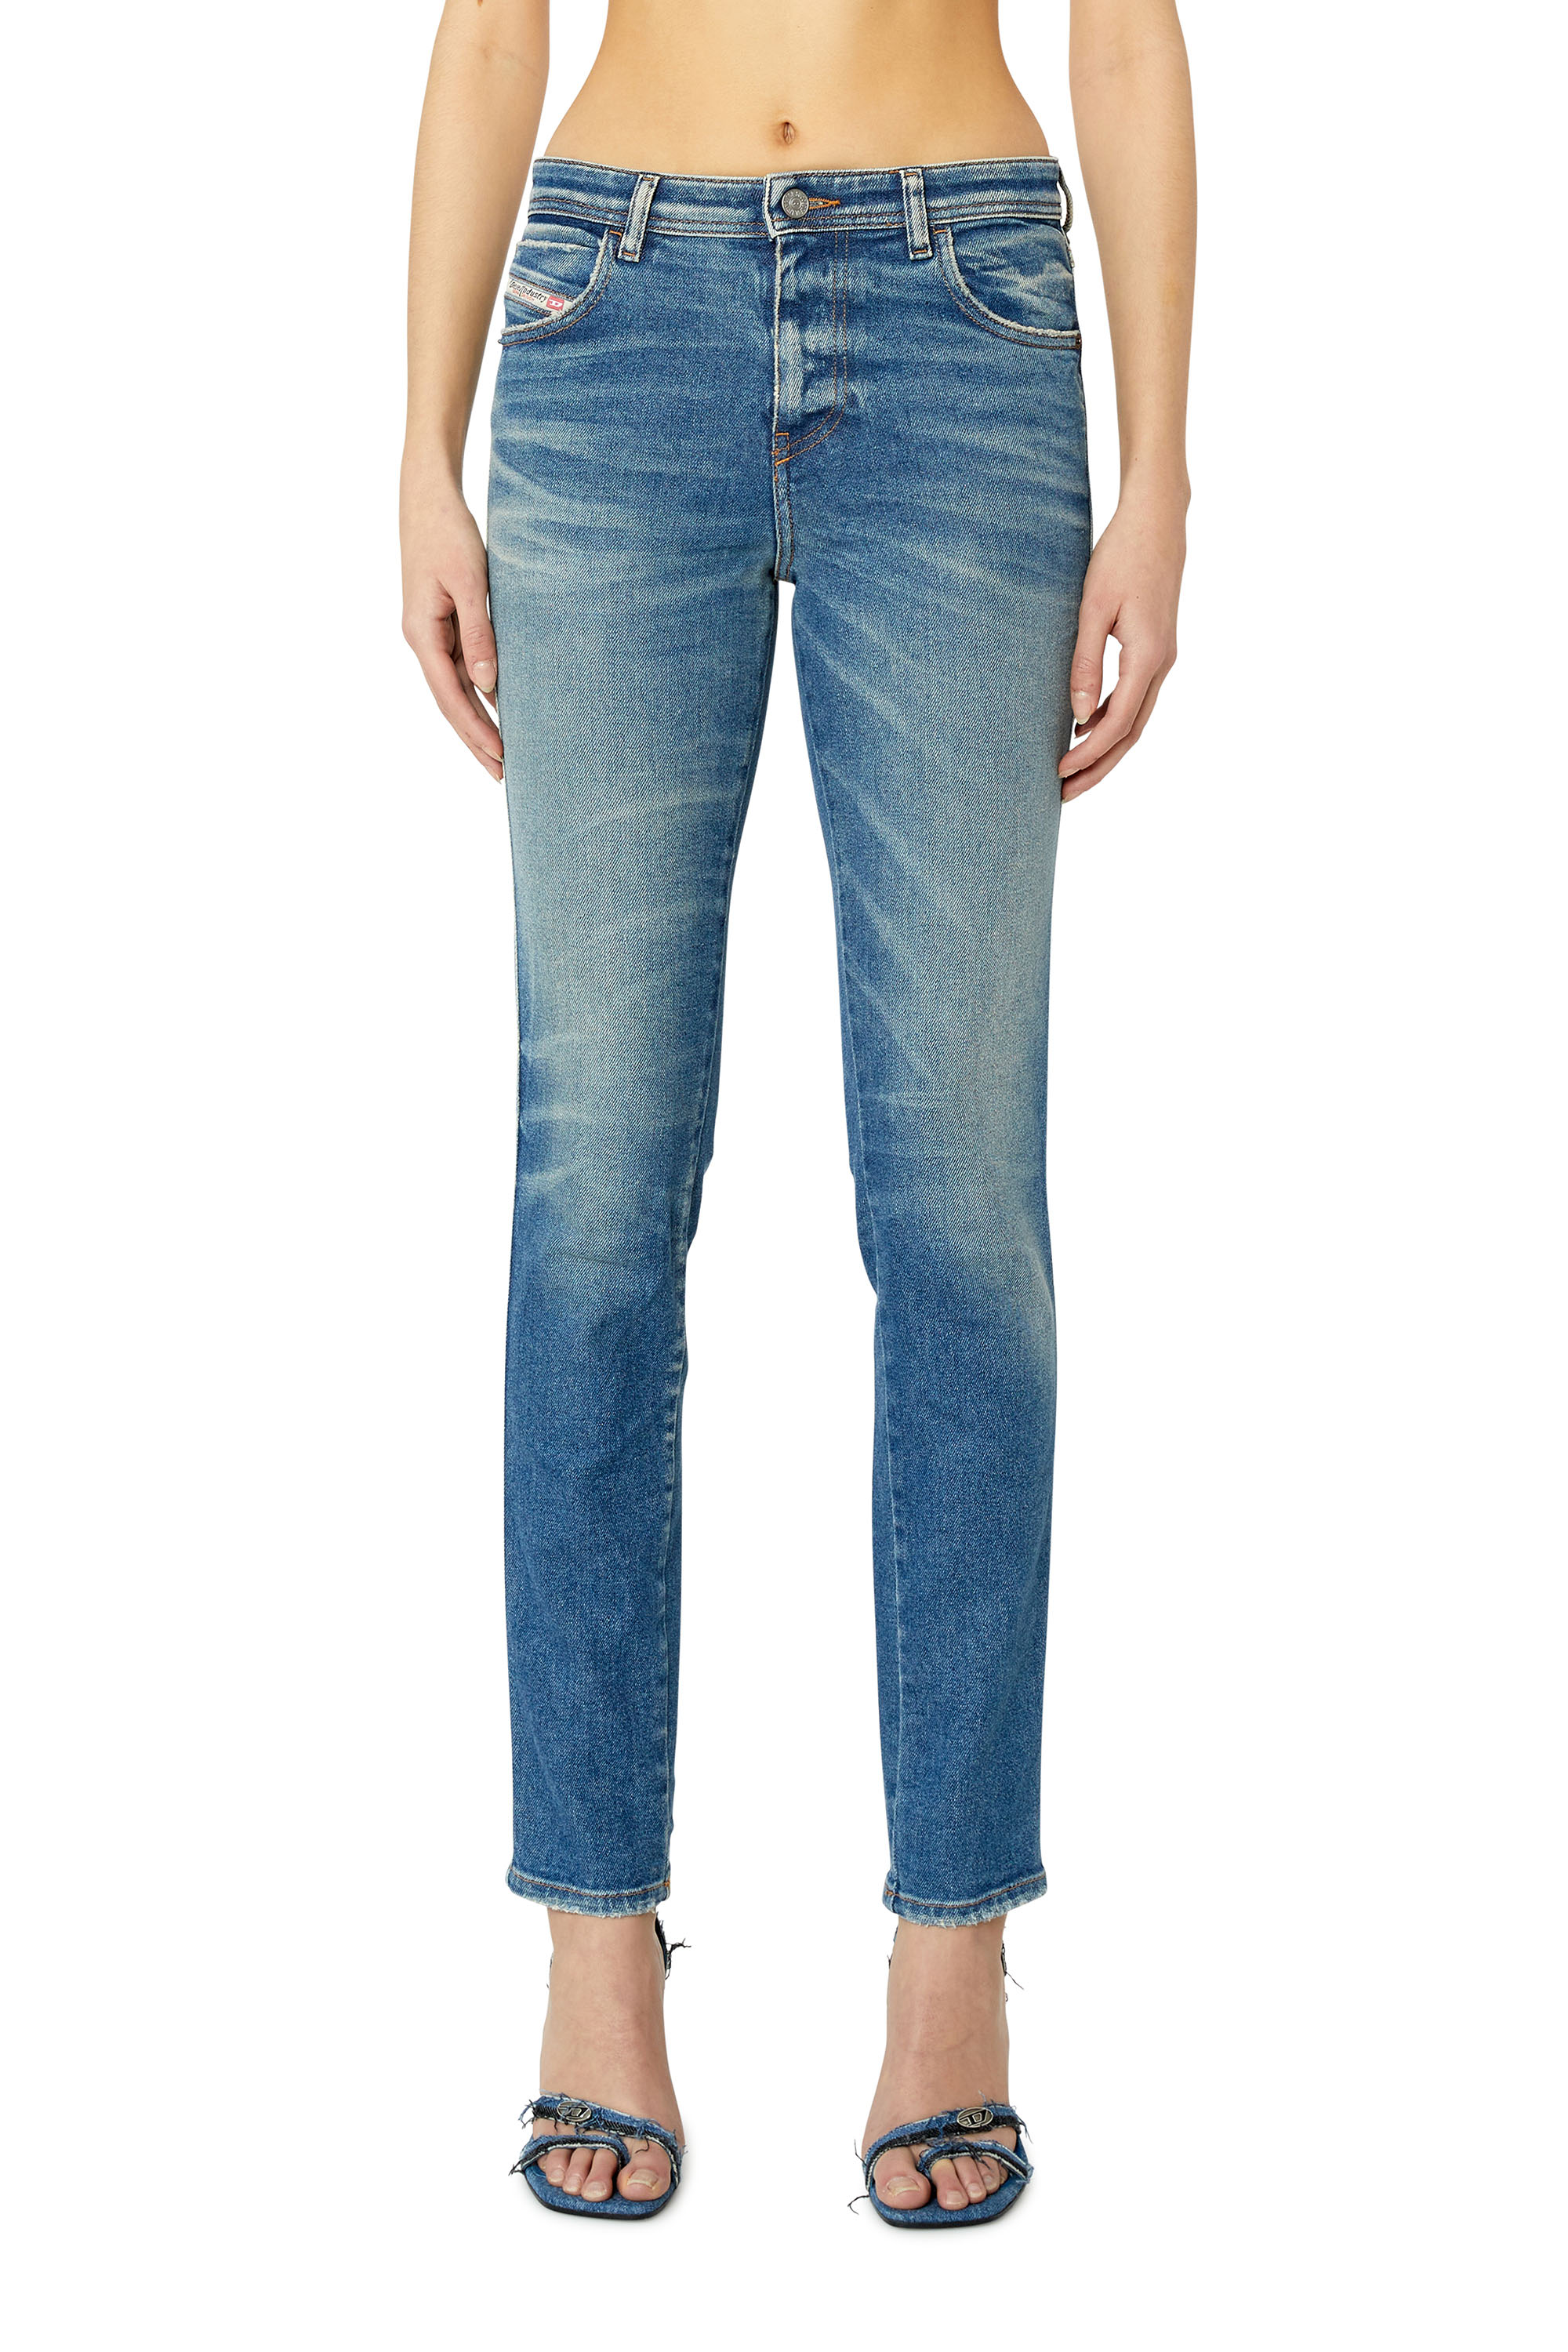 Diesel - Skinny Jeans 2015 Babhila 09E88,  - Image 3